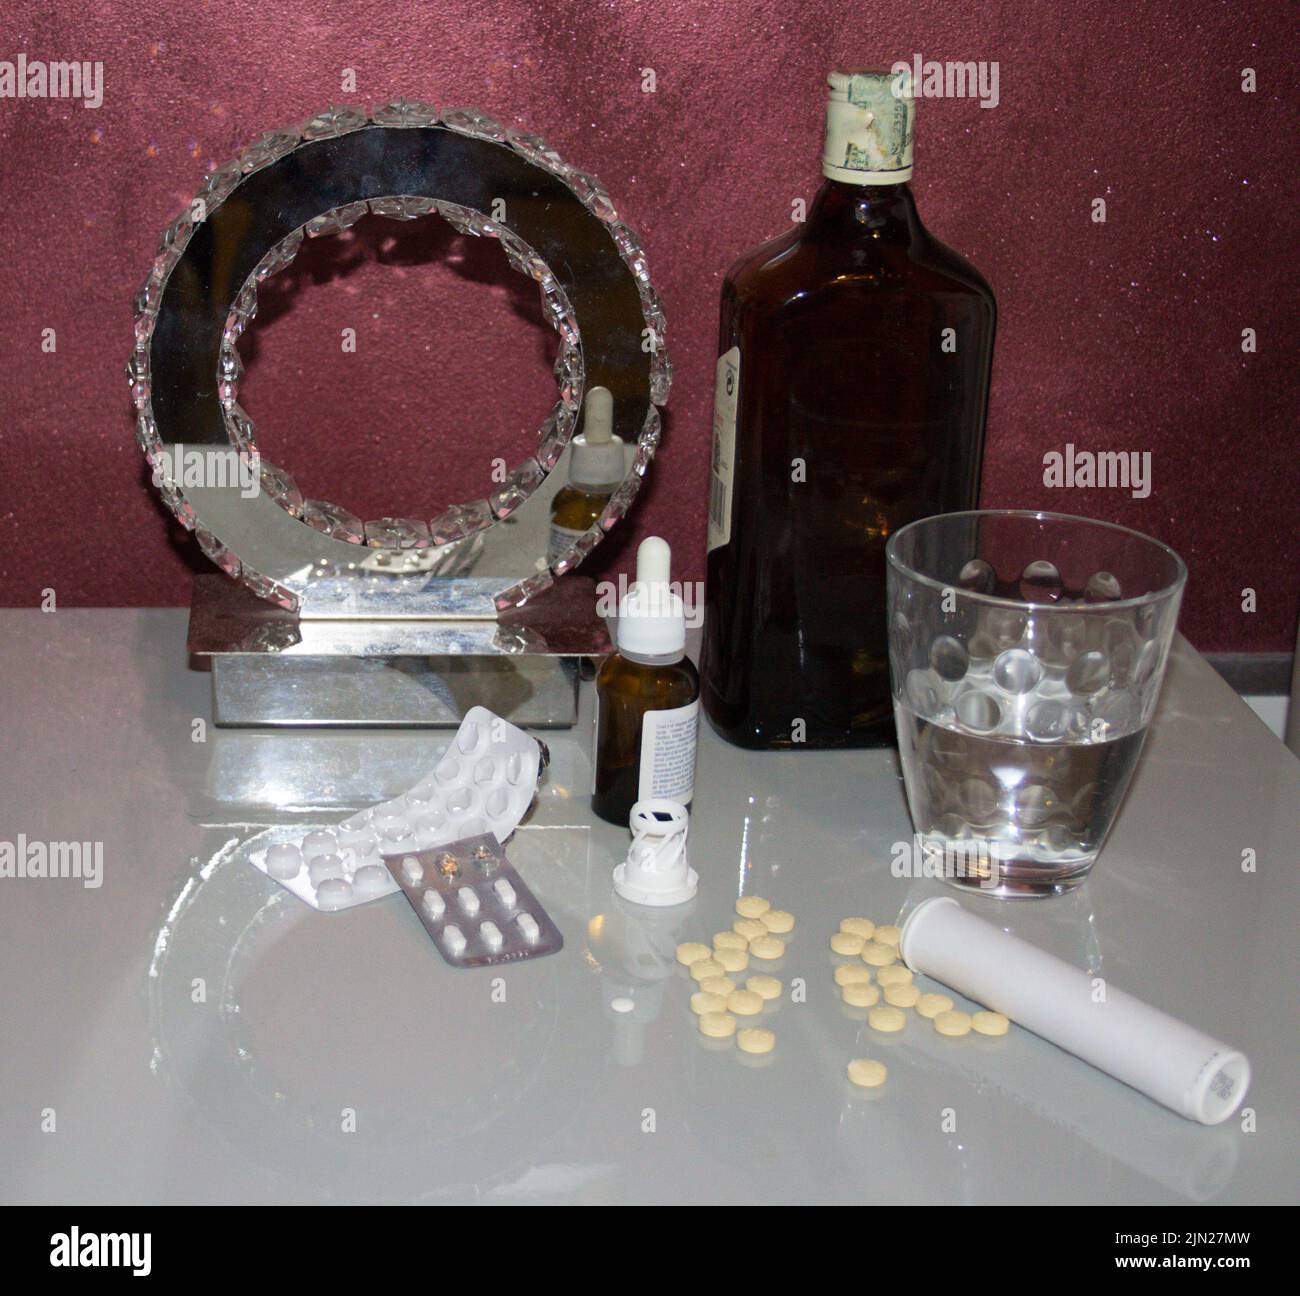 Image d'une table de chevet avec divers médicaments tels que des anxiolytiques et des antidépresseurs, un verre d'eau et une bouteille de whisky. Banque D'Images